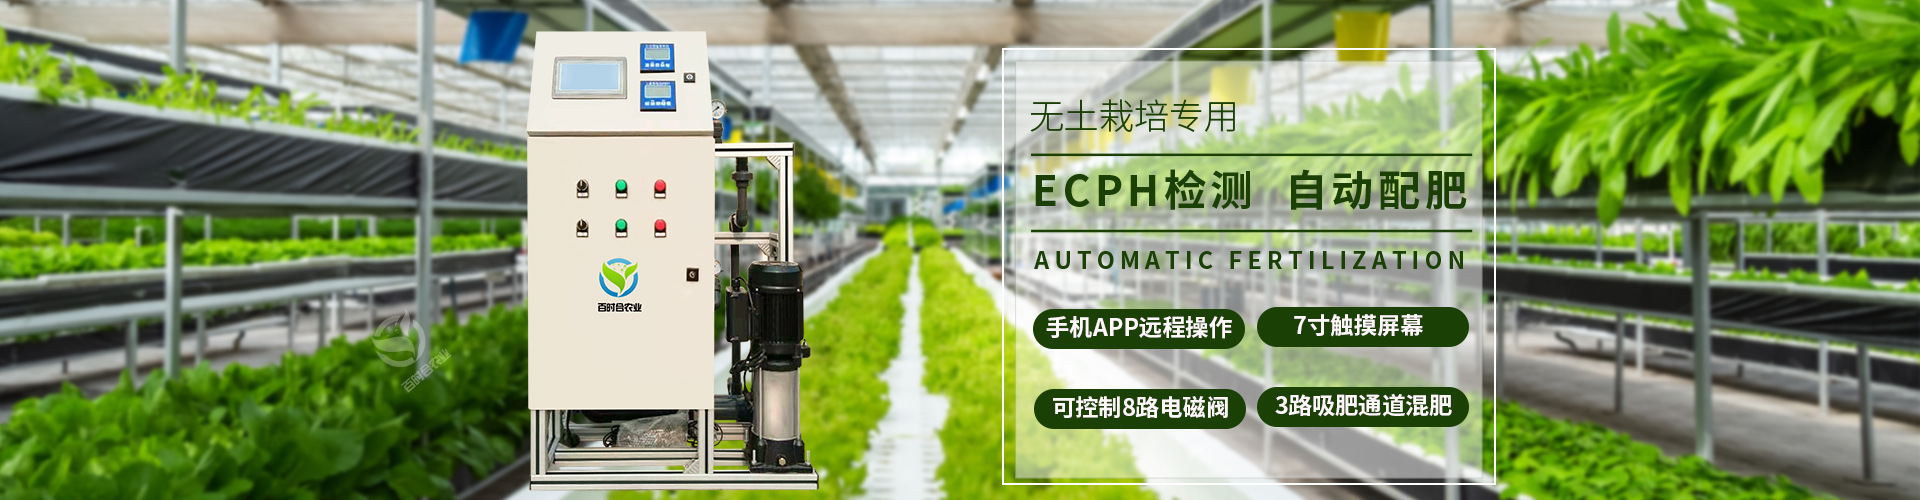 ECPH自动配肥智能施肥机厂家山东百时合农业科技有限公司